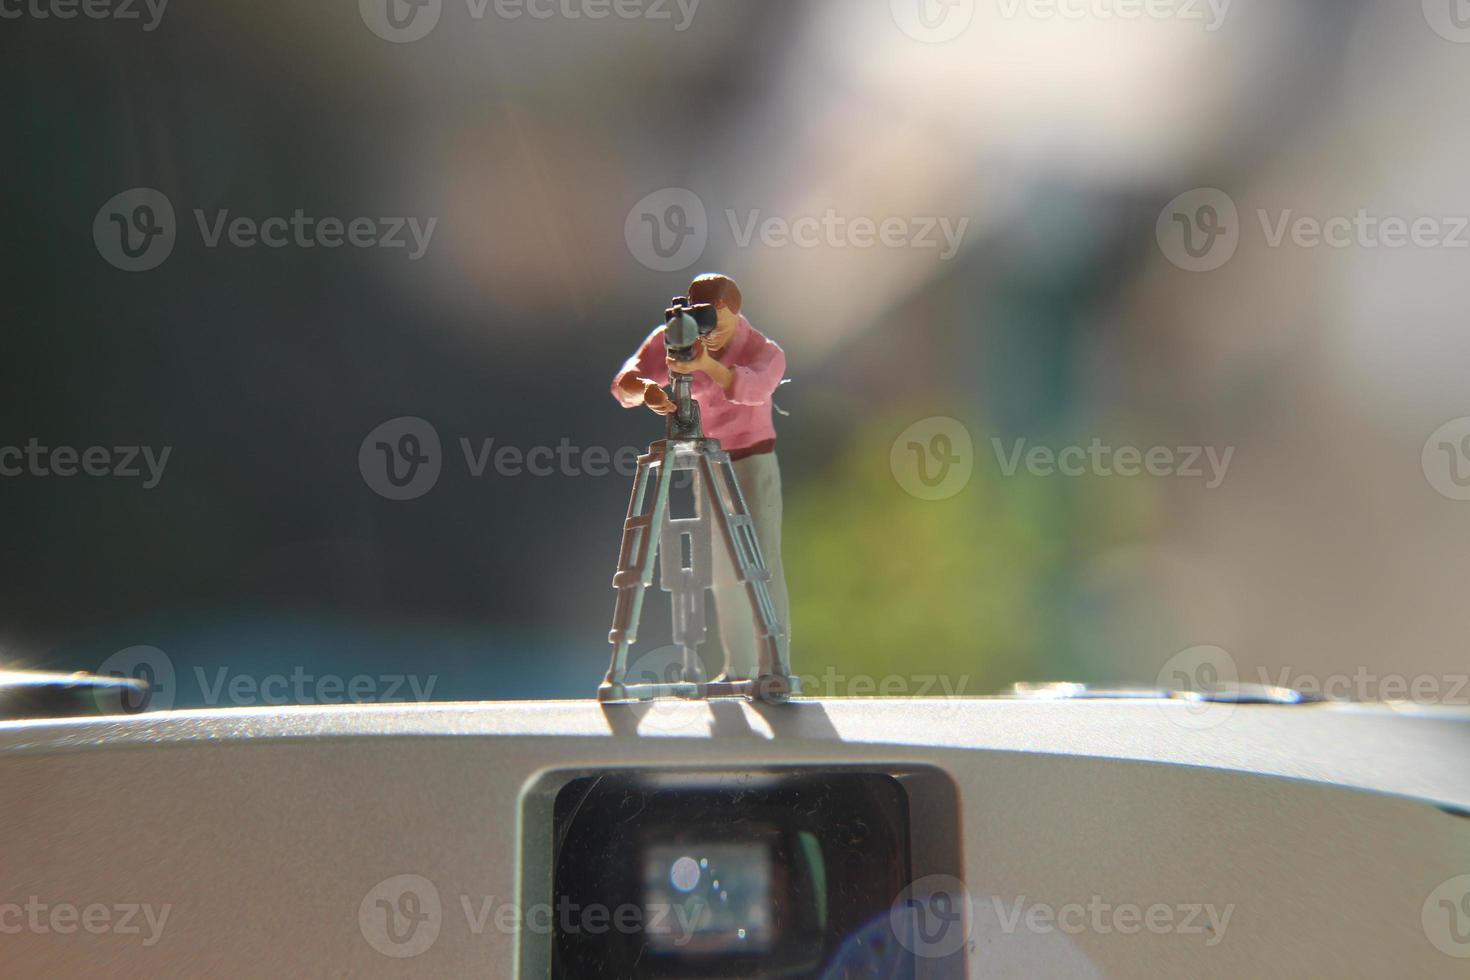 miniatuur figuur van een videograaf opname Aan een analoog camera. foto